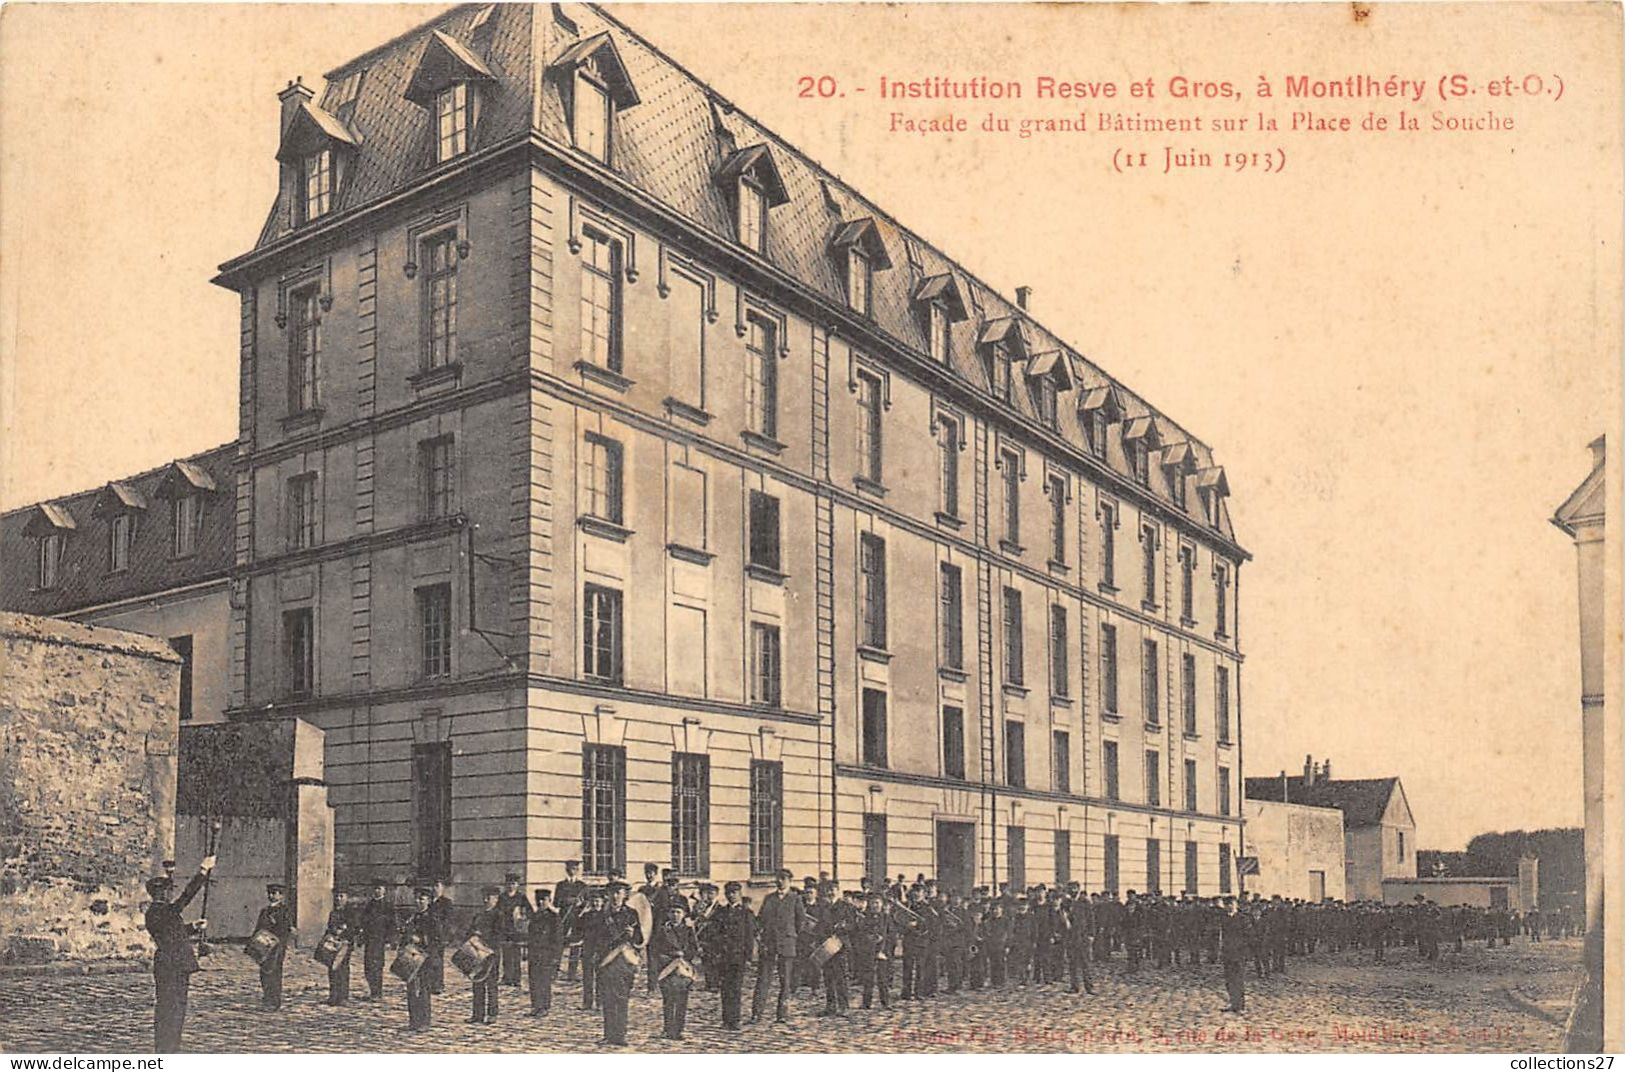 91-MONTHERY- INSTITUTION RESVE ET GROS - FACADE DU GRAND BATIMENT SUR LA PLACE DE LA SOUCHE 11 JUIN 1913 - Montlhery